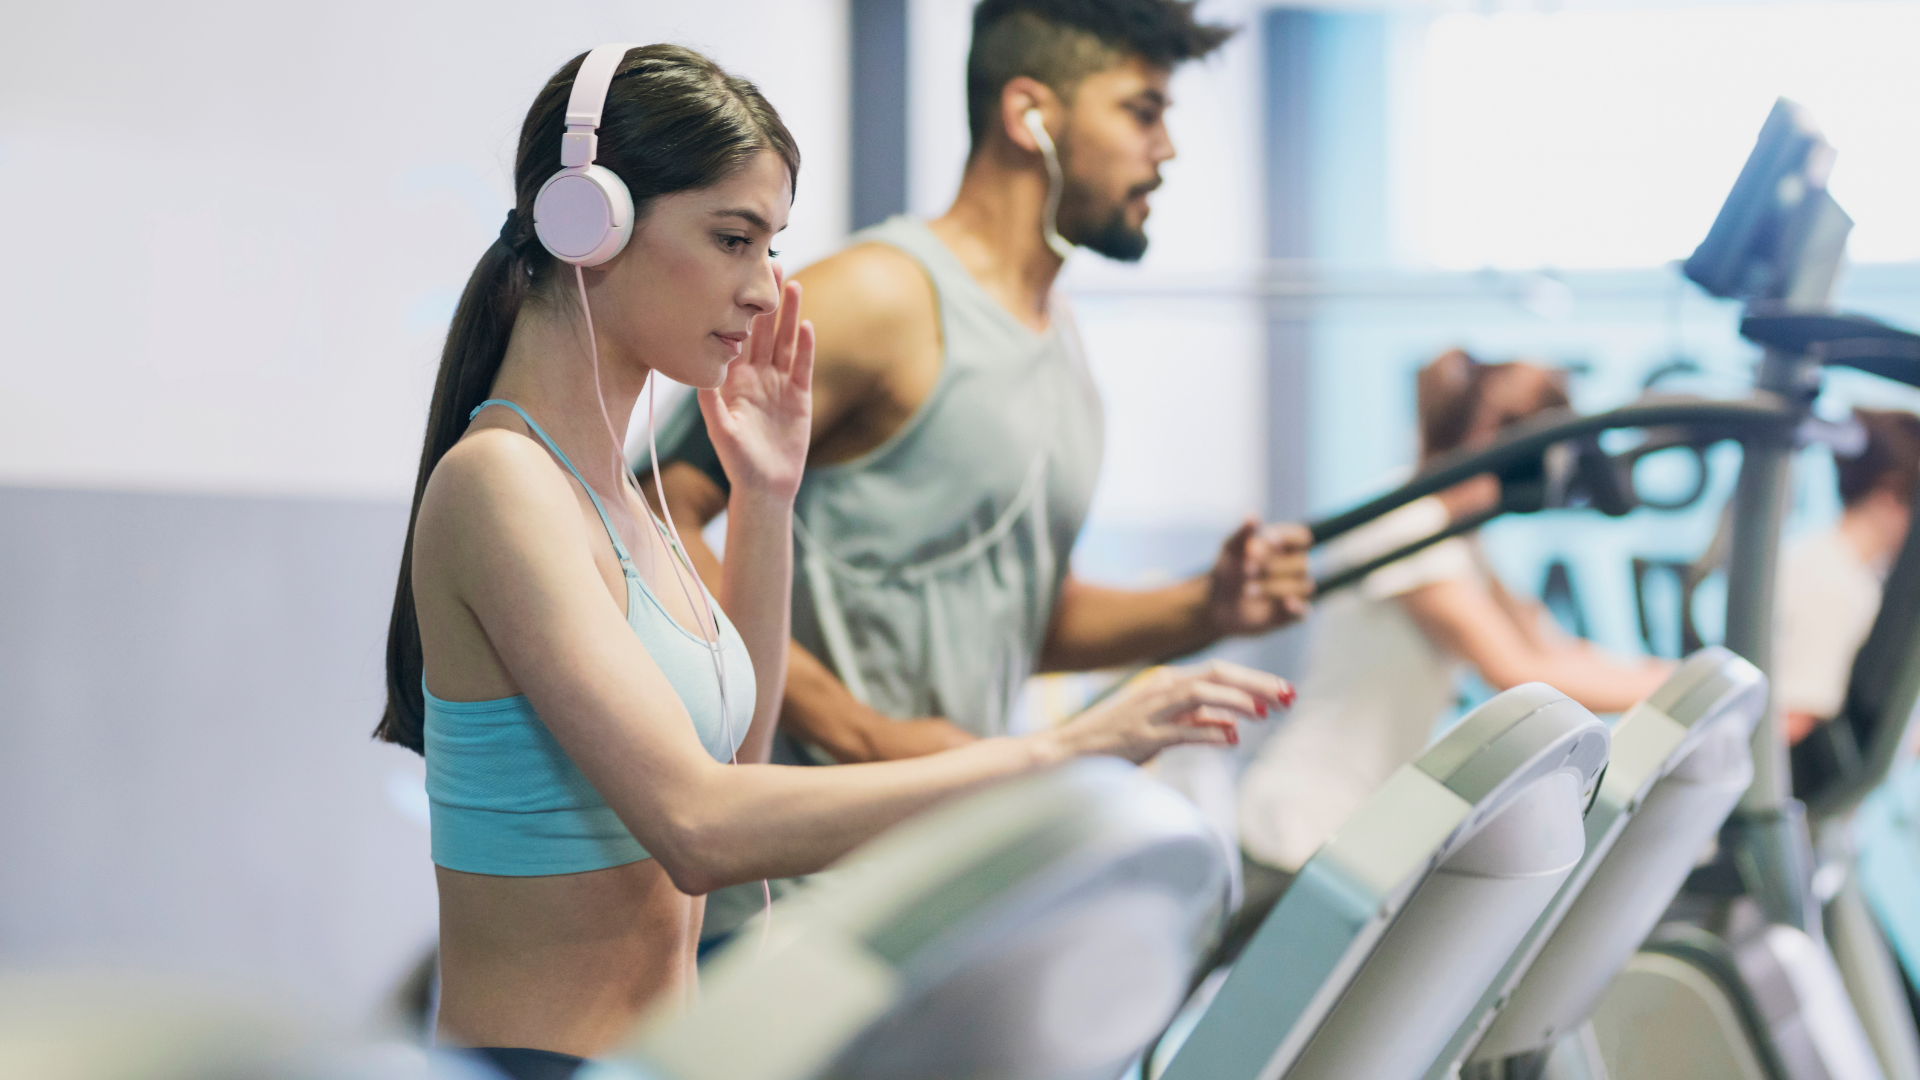 Woman Running on Treadmill Wearing Headphones